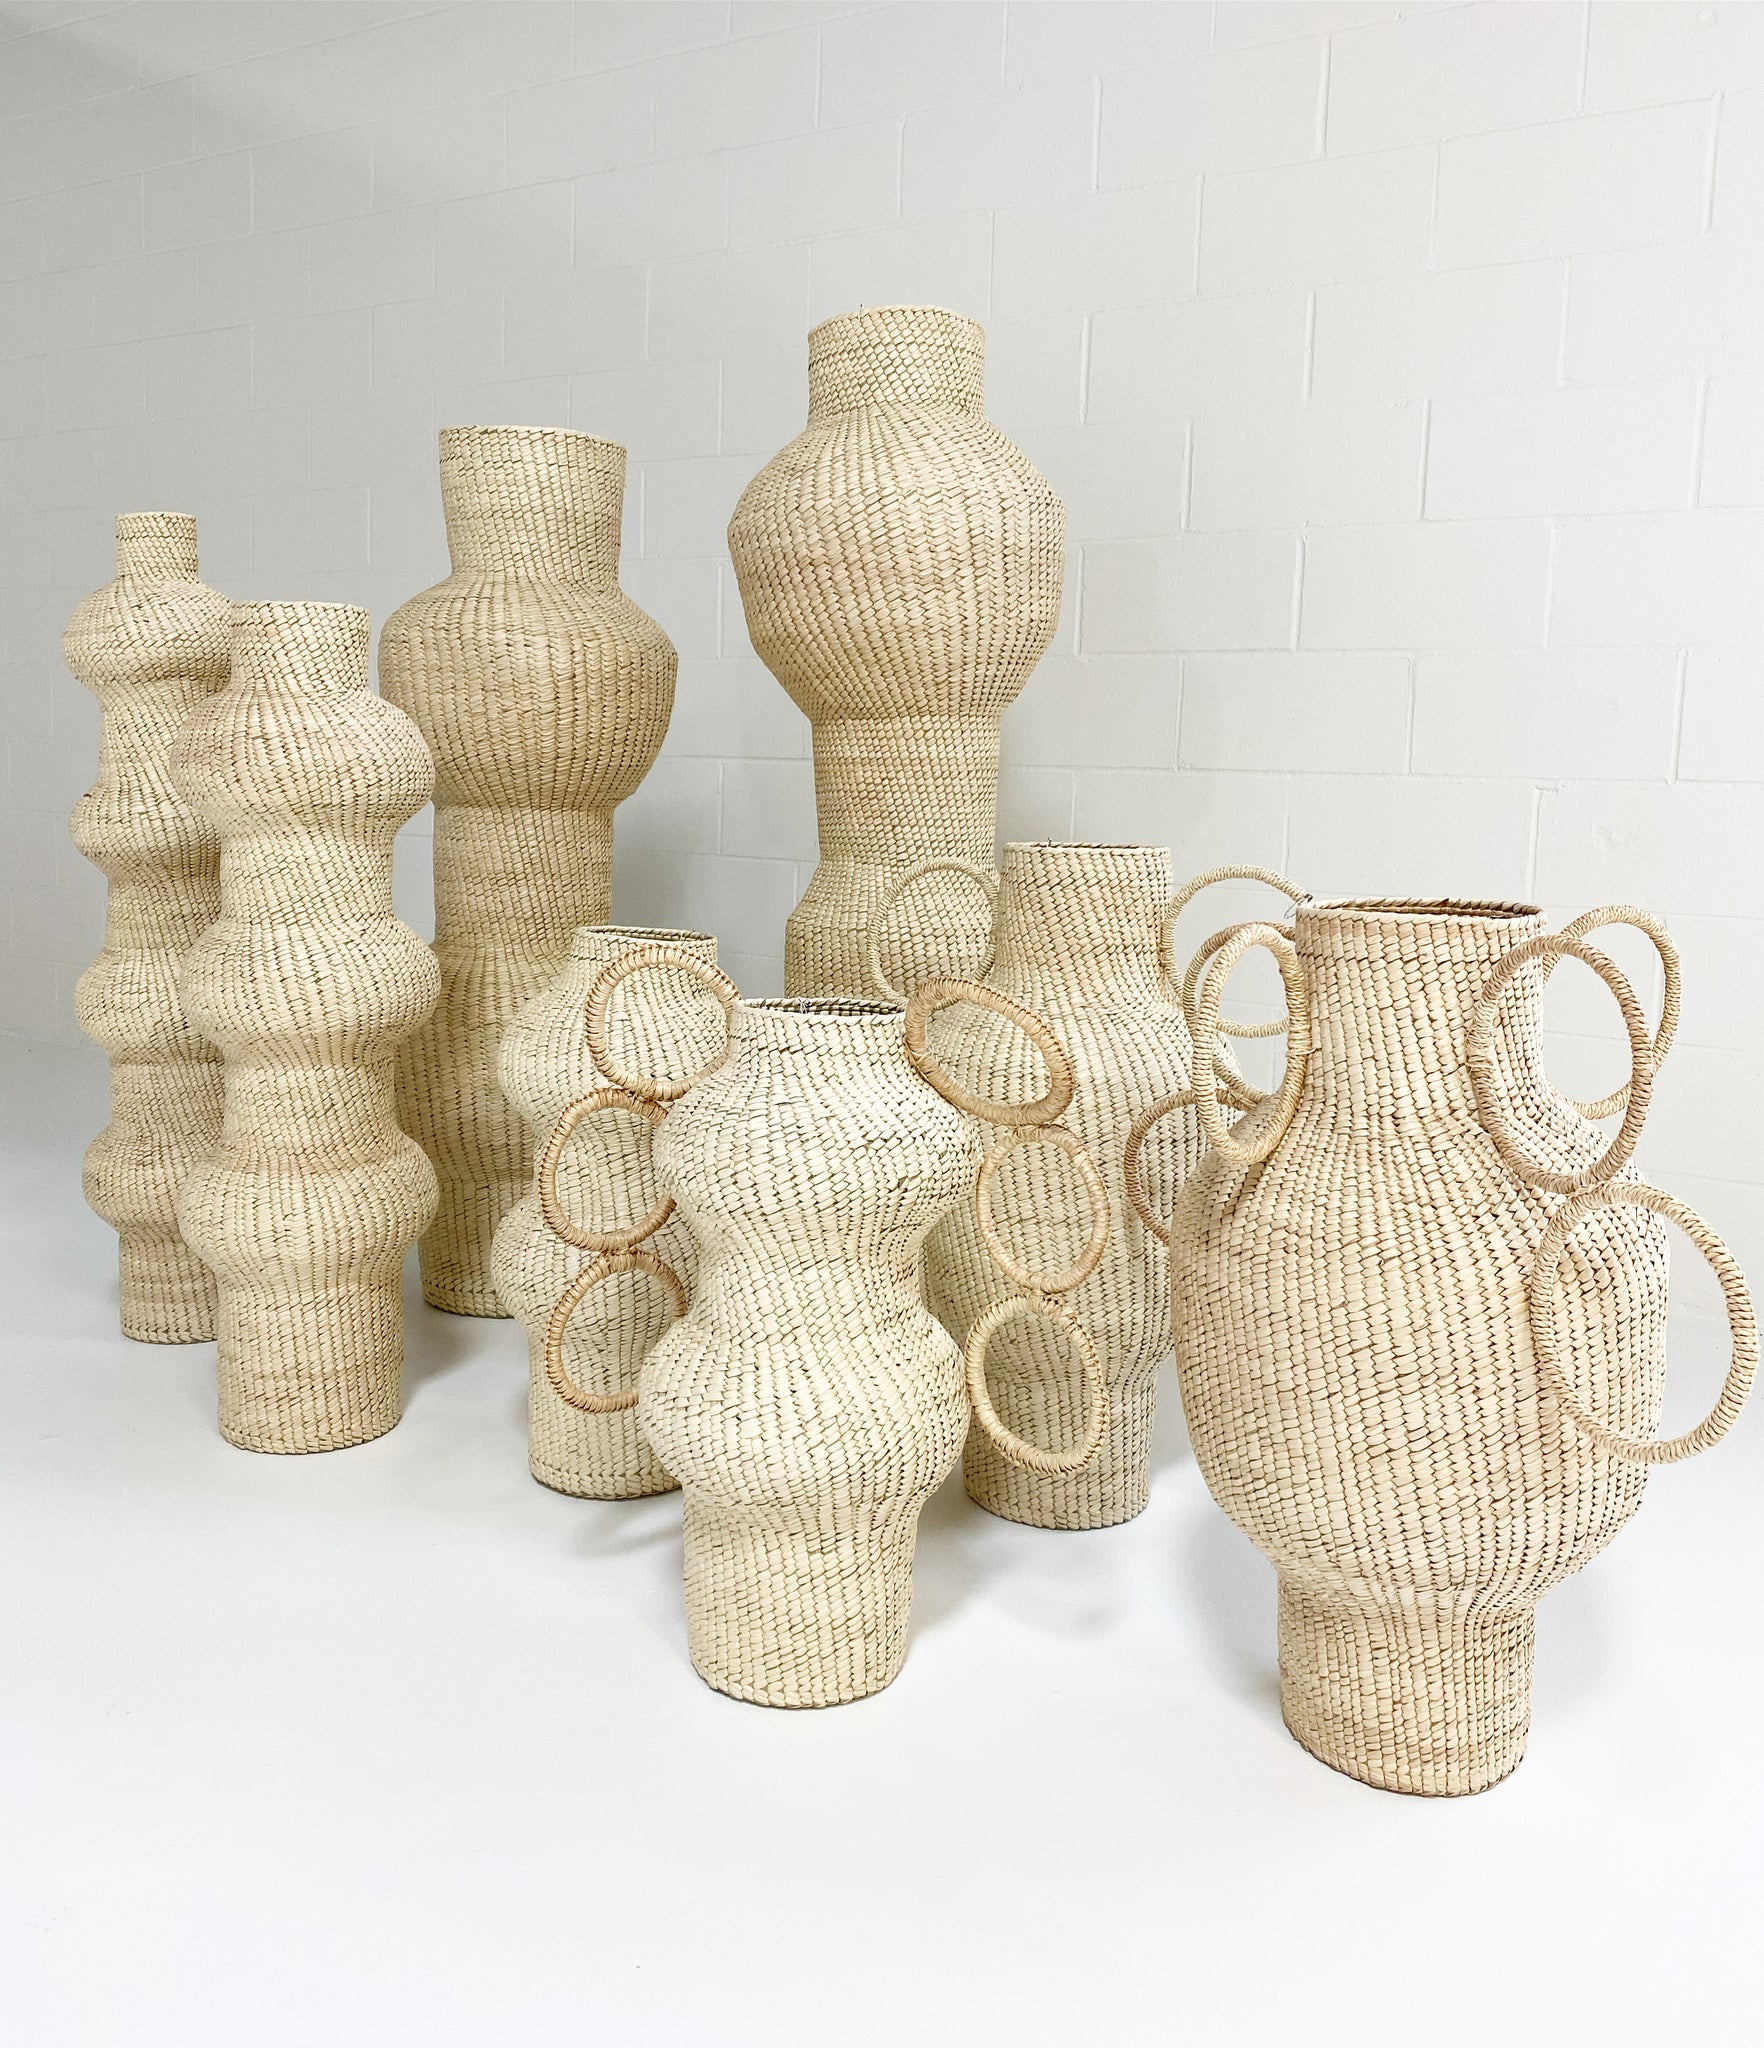 Union Vase 01, Palm Sculpture